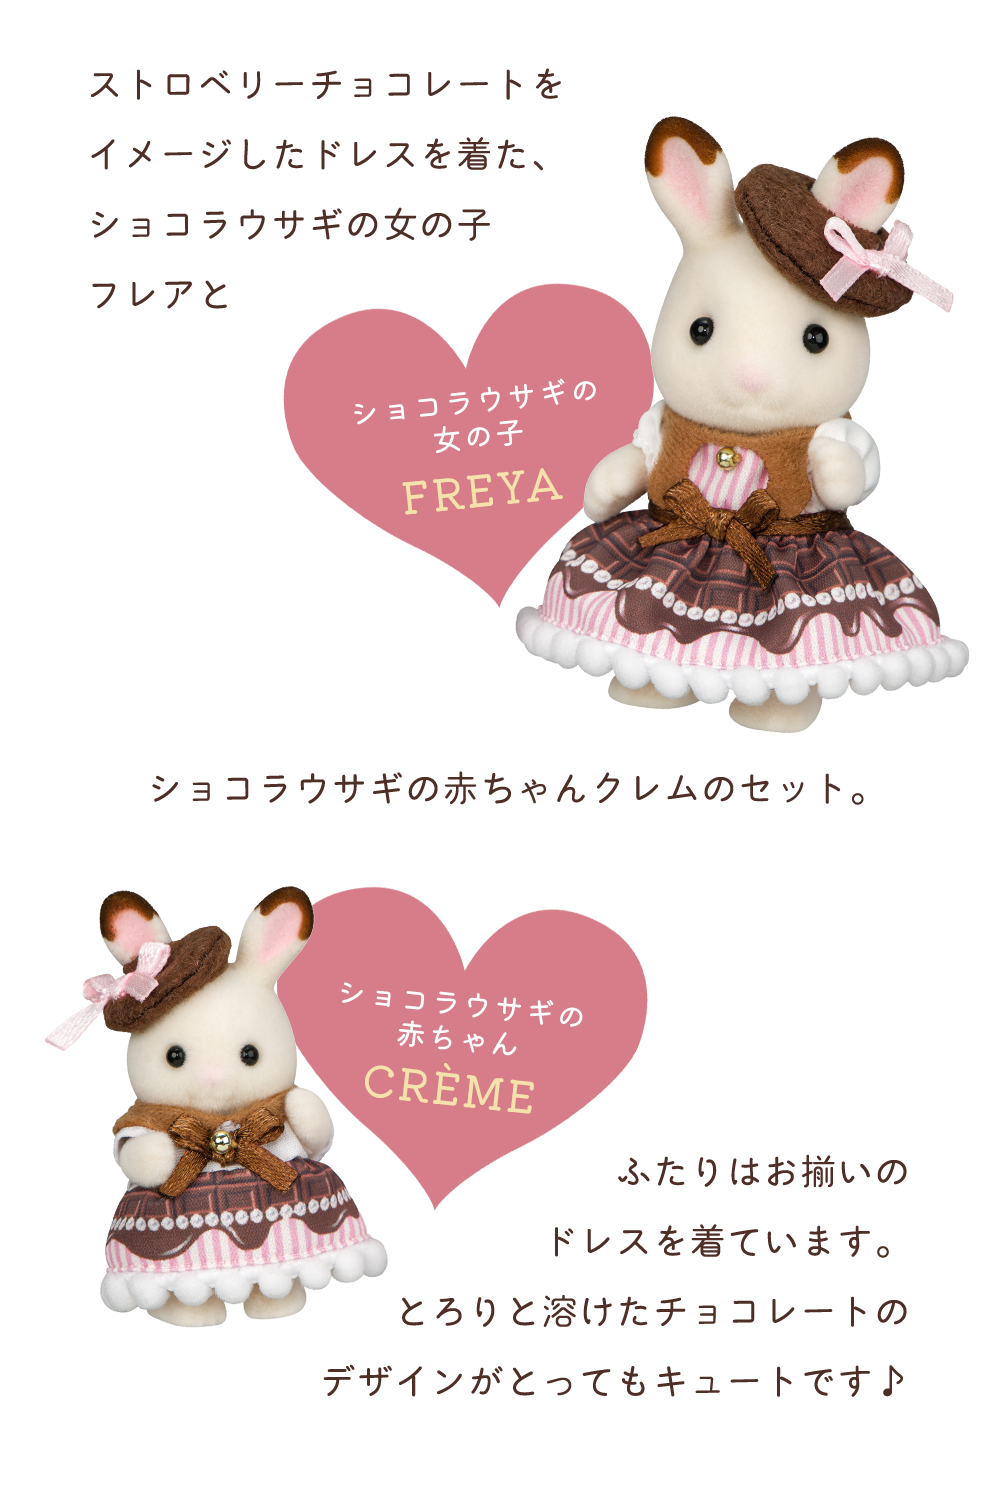 ストロベリーチョコレートを イメージしたドレスを着た、ショコラウサギの女の子 フレアとショコラウサギの赤ちゃんクレムのセット。